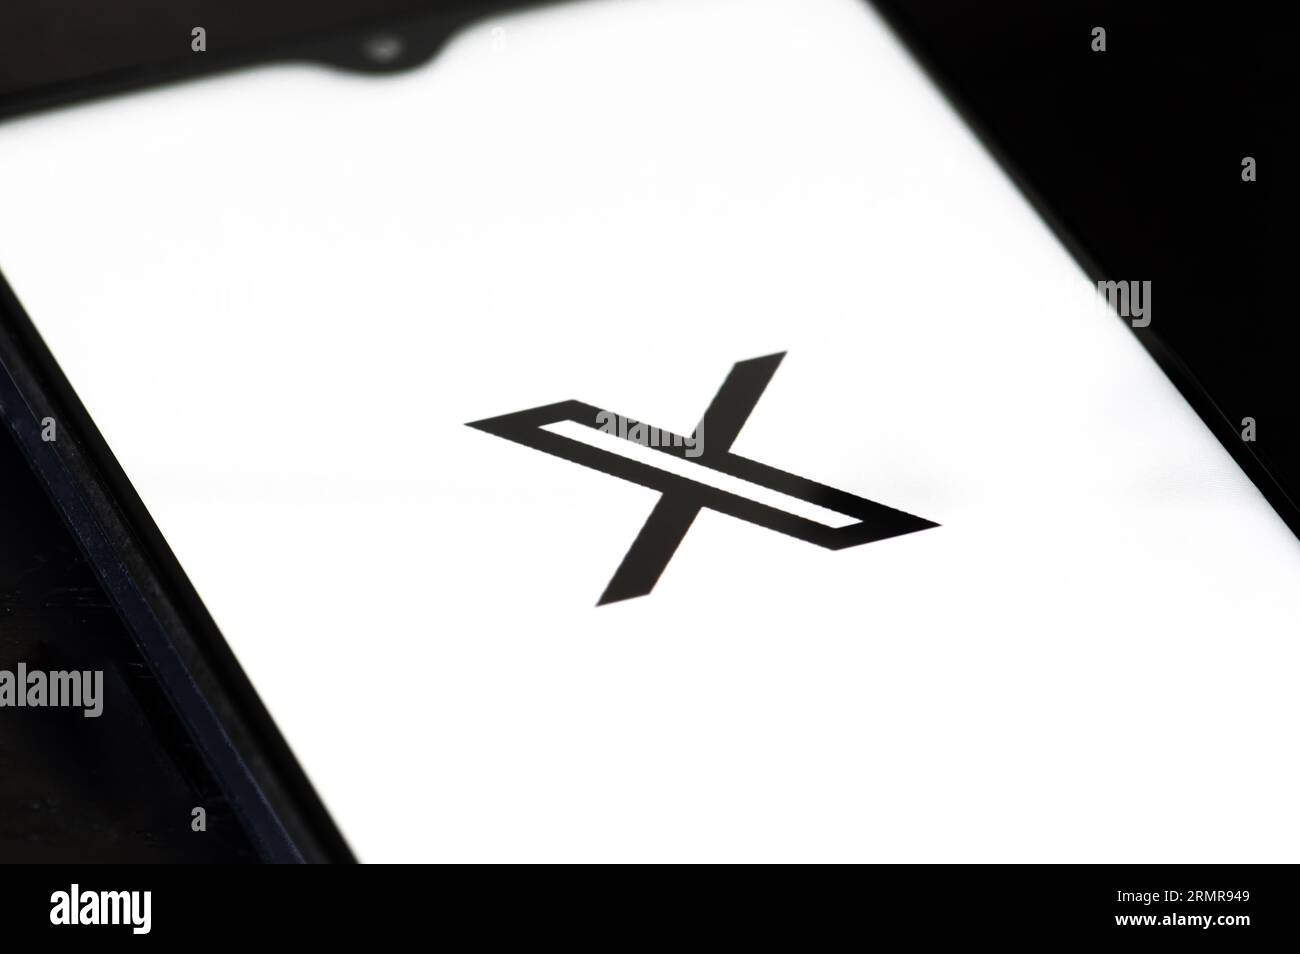 Logo iniziale di Twitter o X e app su uno smartphone su sfondo bianco. Social media online e servizio di social network di proprietà di Elon Musk Foto Stock